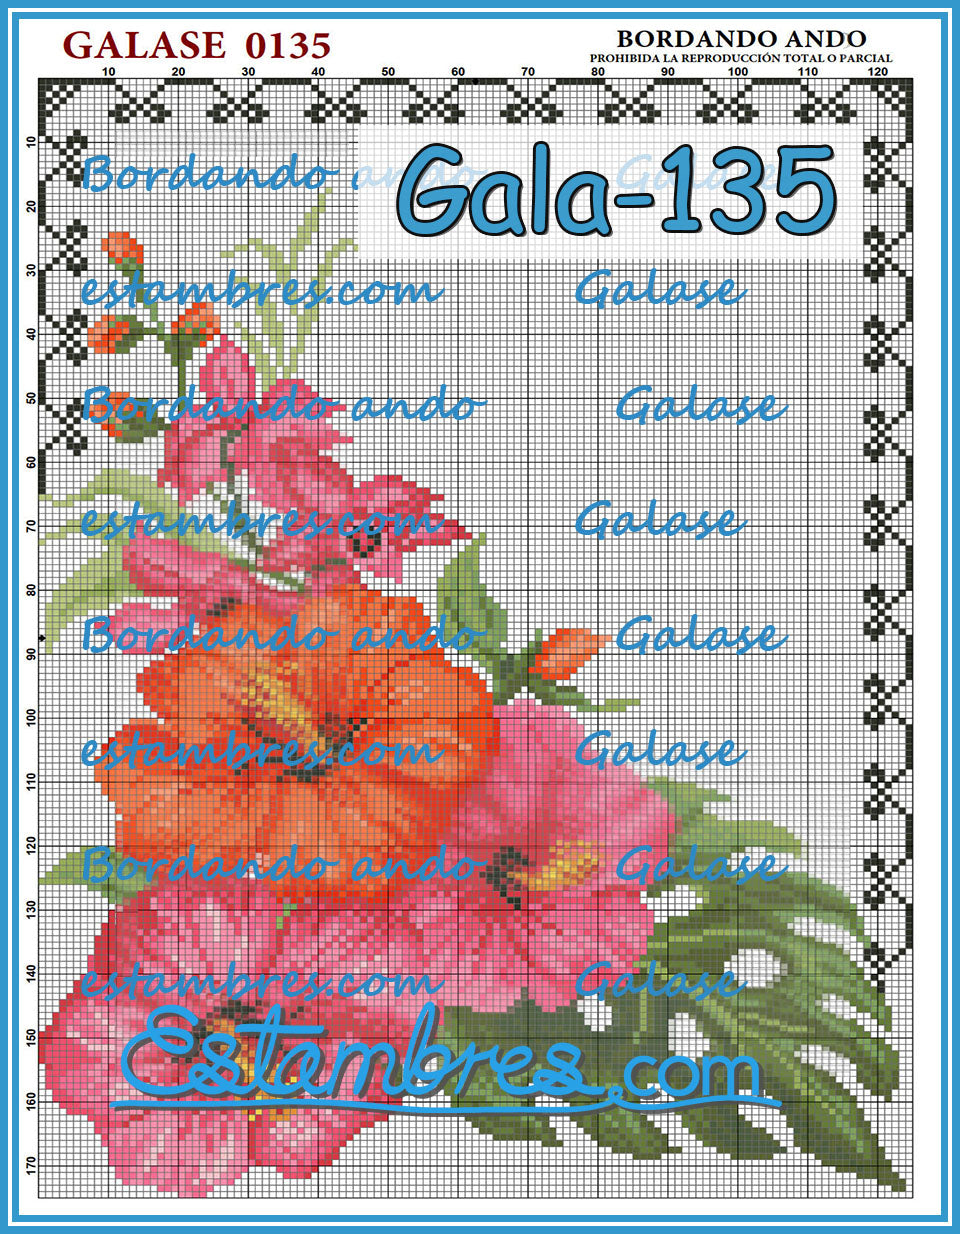 GALASE [071-140] - 2 of 7